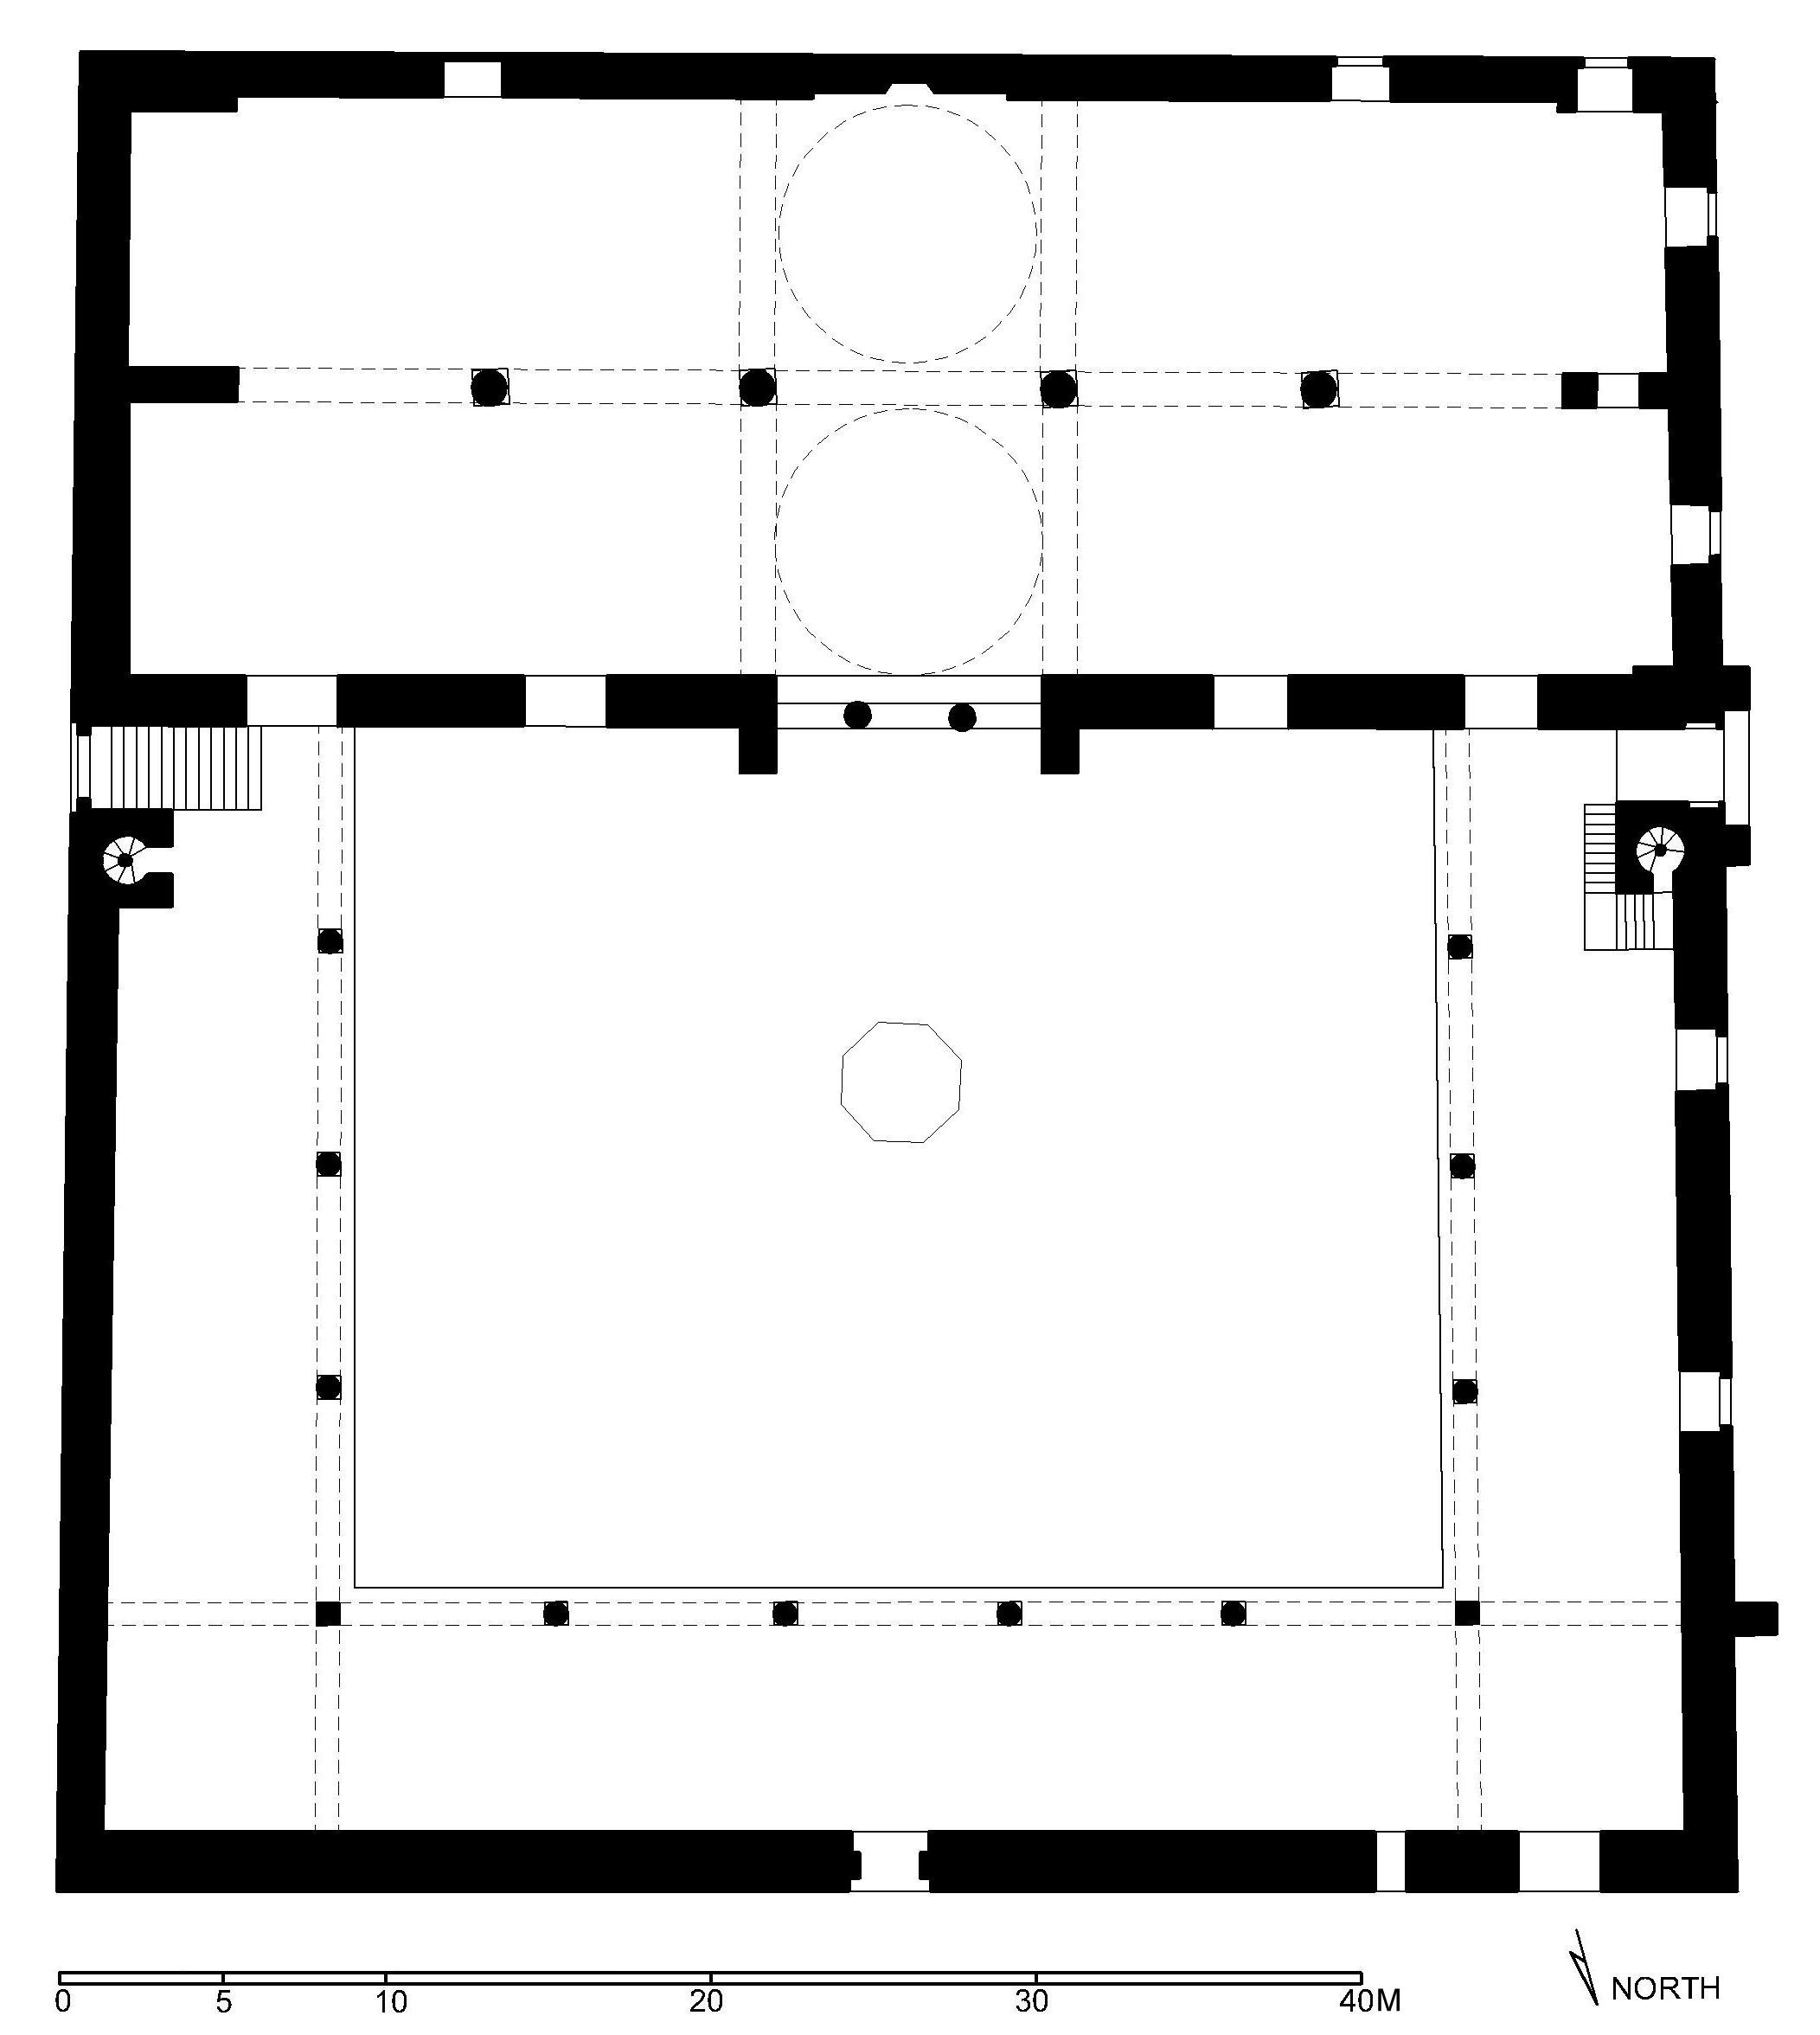 Floor plan of Isa Bey Mosque, Selcuk